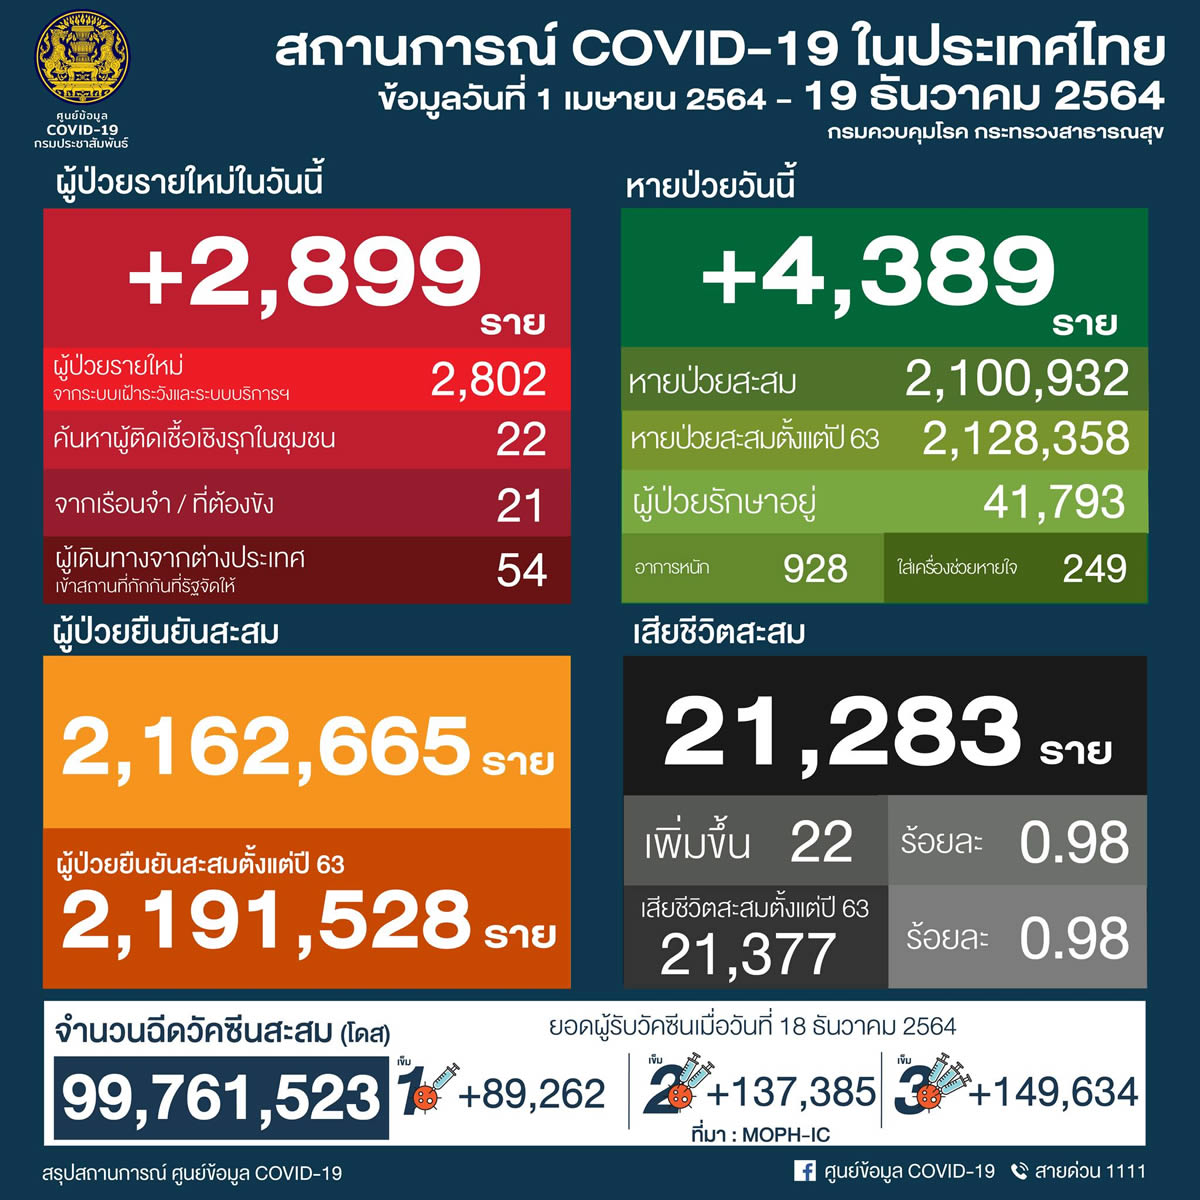 タイ 2,899人陽性 22人死亡／バンコク 395人陽性 1人死亡／チェンマイ 57人陽性［2021年12月19日発表］